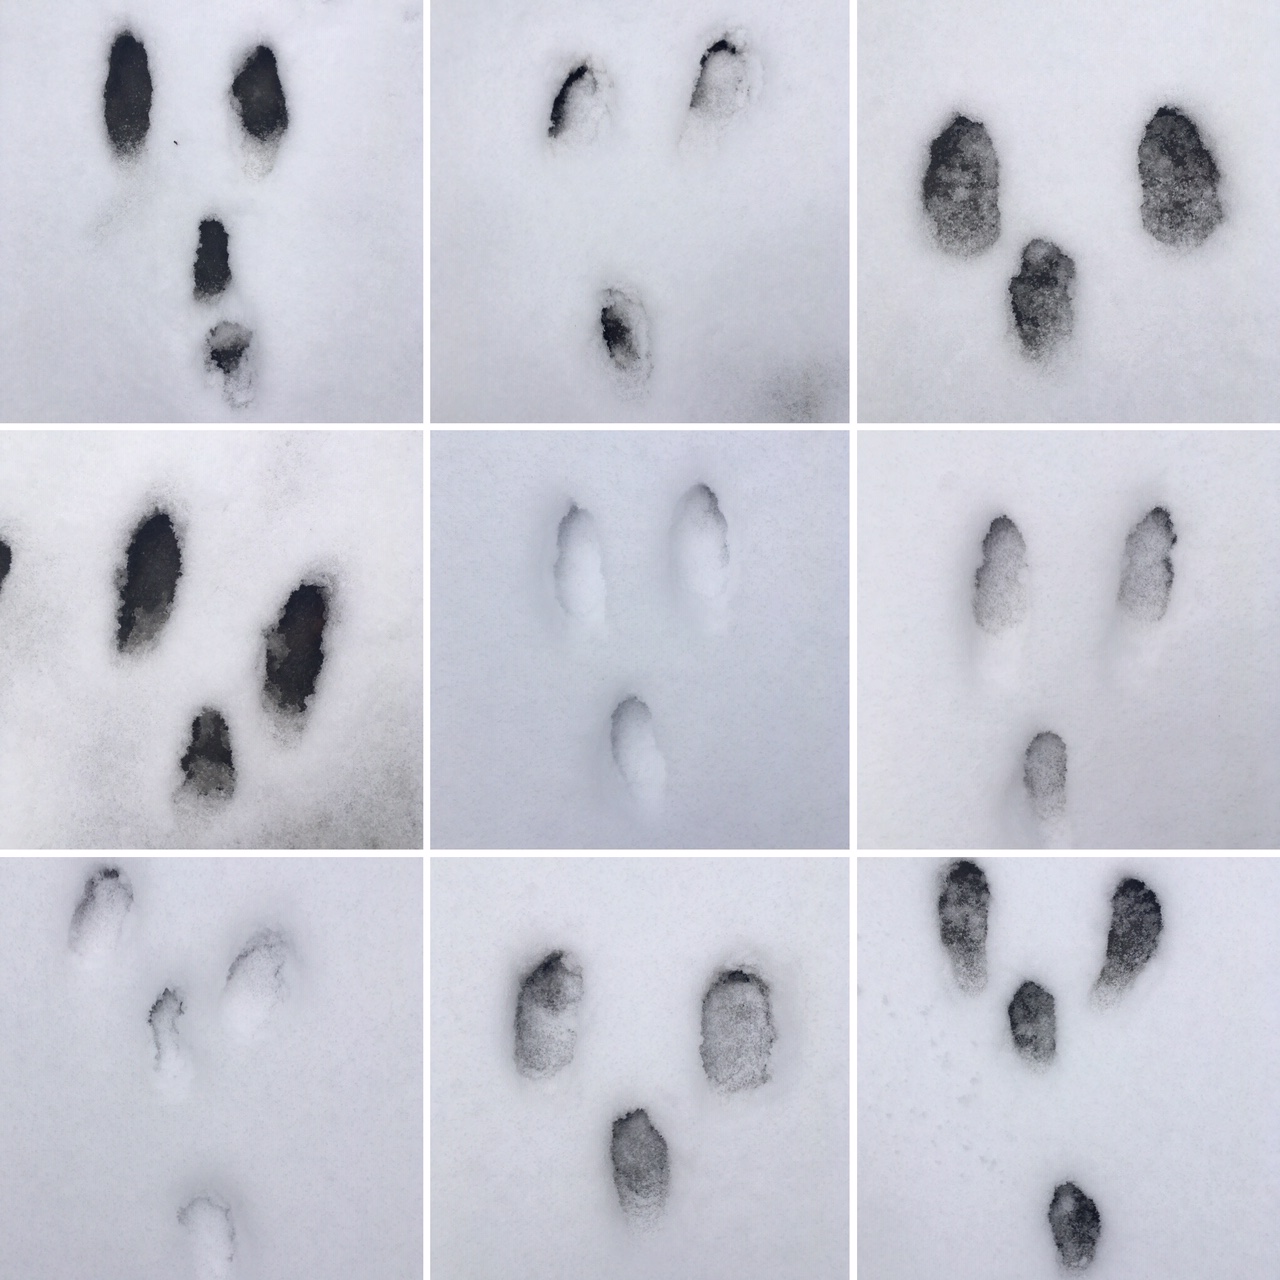 Yhdeksään ruutuun jaettu kuva. Ruuduissa kuvia jäniksen jäljistä lumessa.